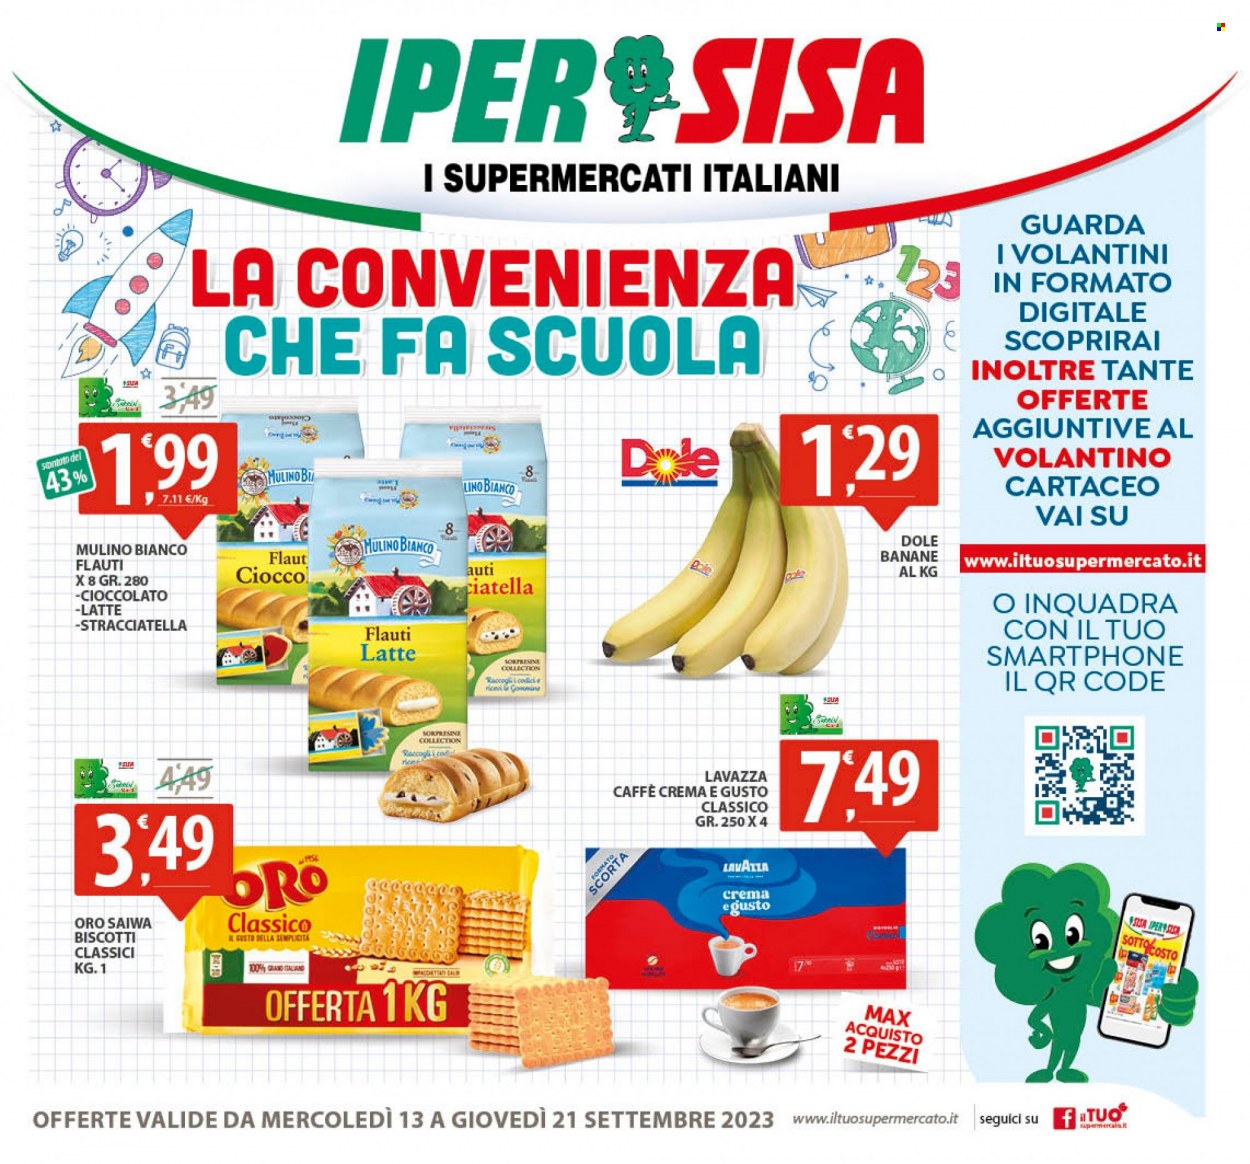 Volantino SISA - 13/9/2023 - 21/9/2023 - Prodotti in offerta - Mulino Bianco, banane, biscotti, Oro Saiwa, caffè, Lavazza. Pagina 1.